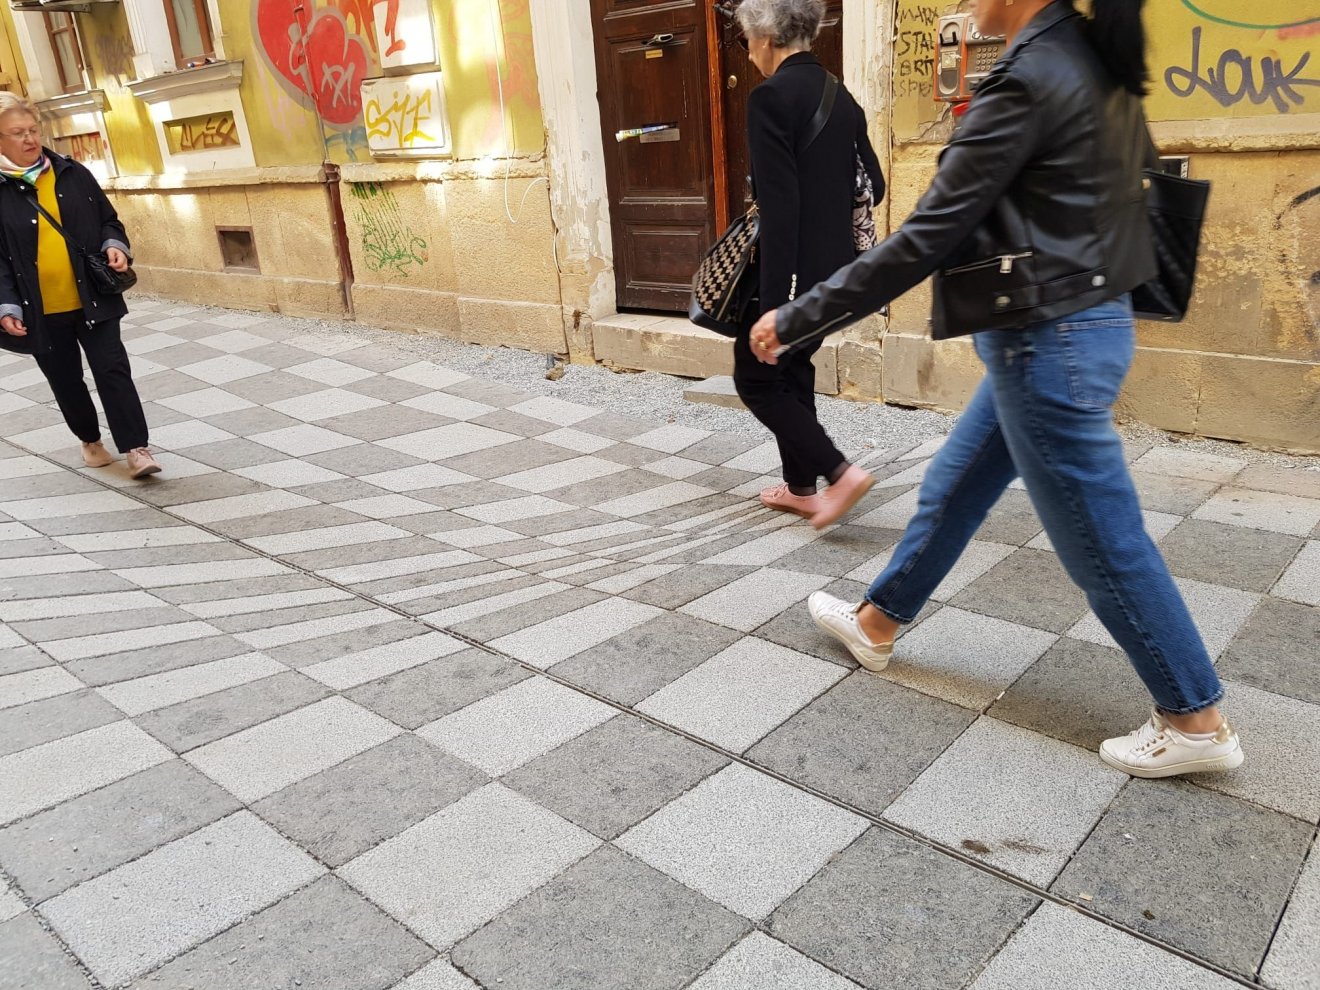 Optikai csalódást előidéző térkövezéssel tisztelegnek Bolyai János munkássága előtt Kolozsváron